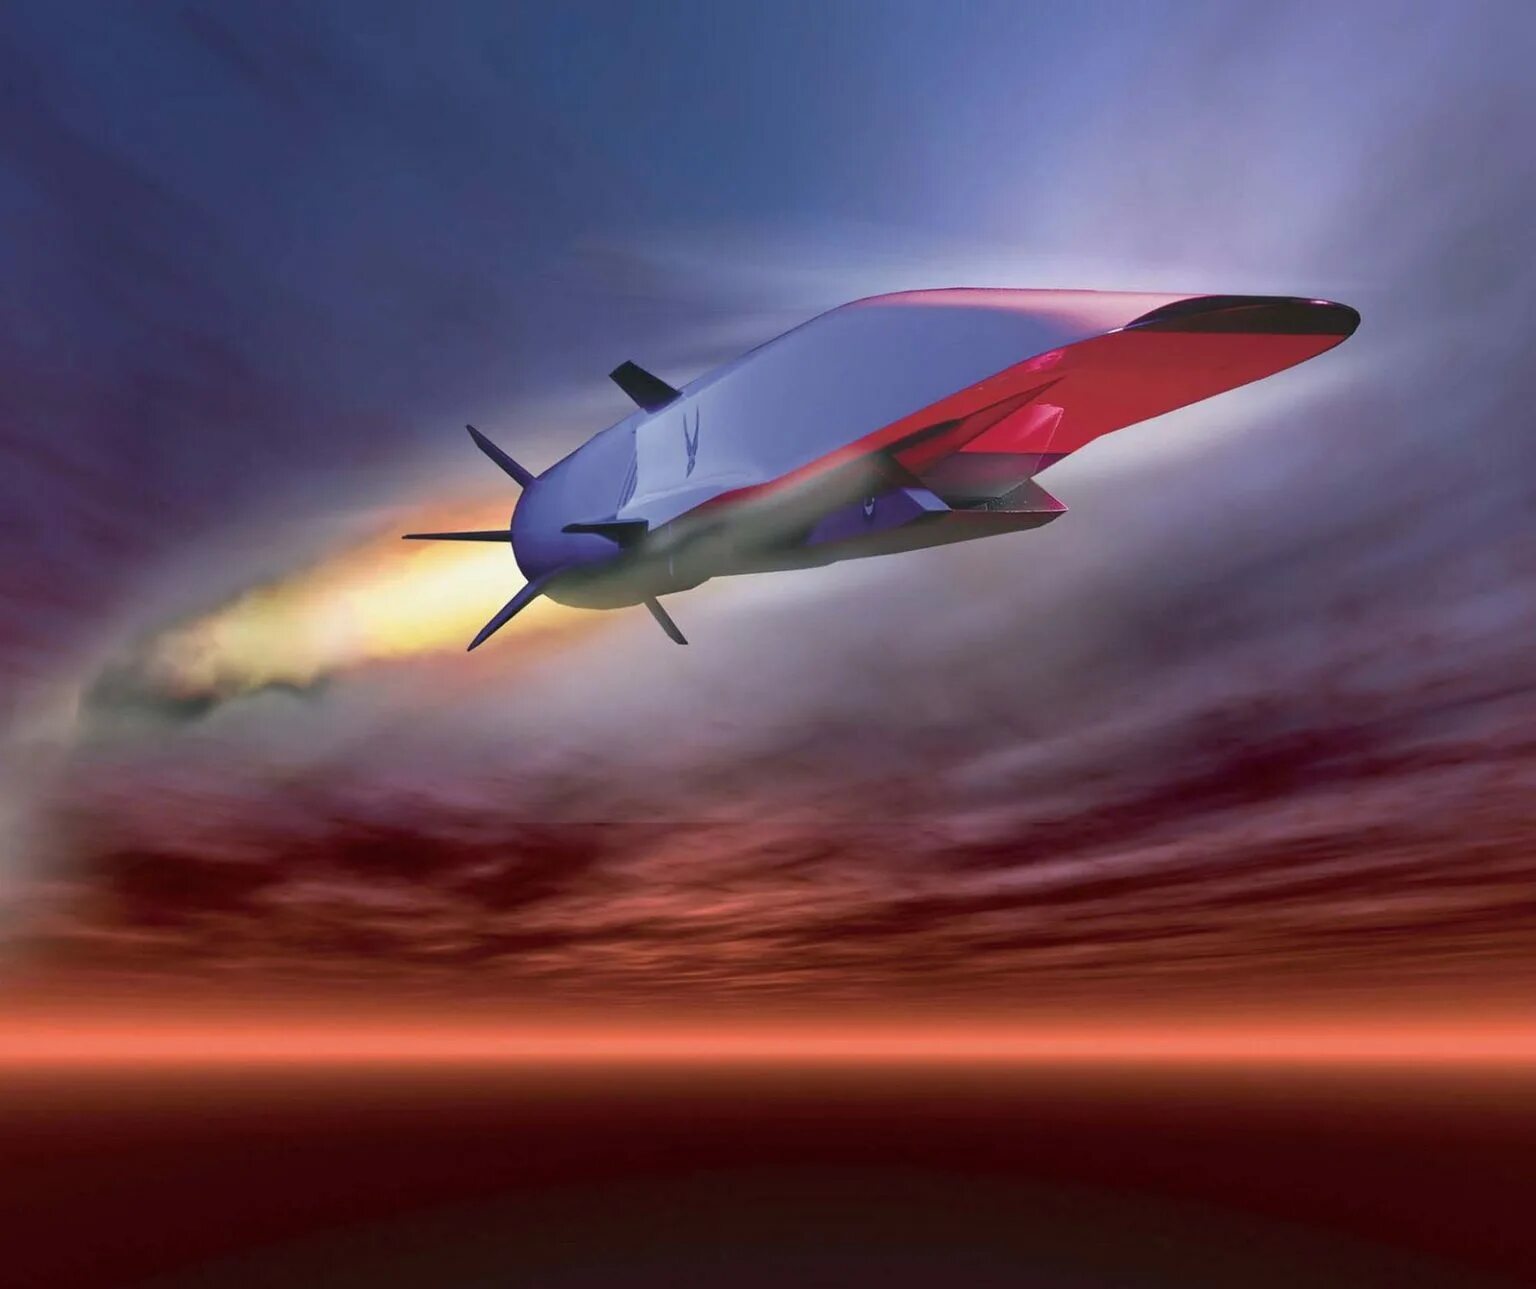 Гиперзвуковая ракета x51. Ю-71 гиперзвуковой летательный аппарат. X-51a Waverider гиперзвуковая Крылатая ракета США. Американская гиперзвуковая ракета x-51.